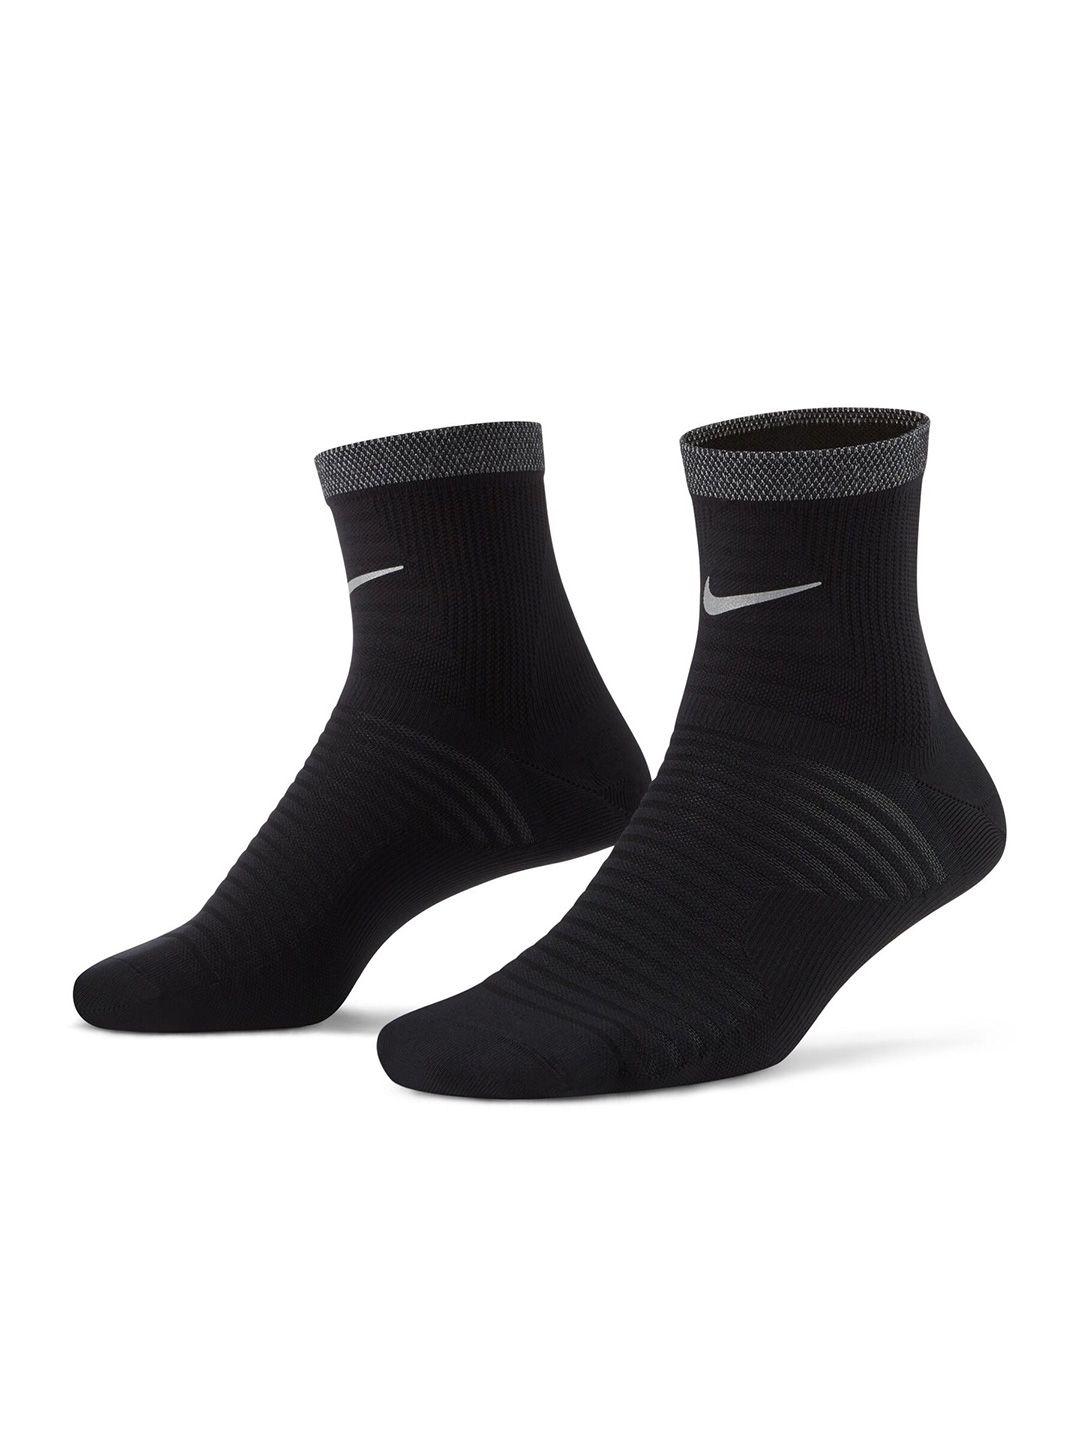 nike-spark-lightweight-running-cotton-ankle-socks